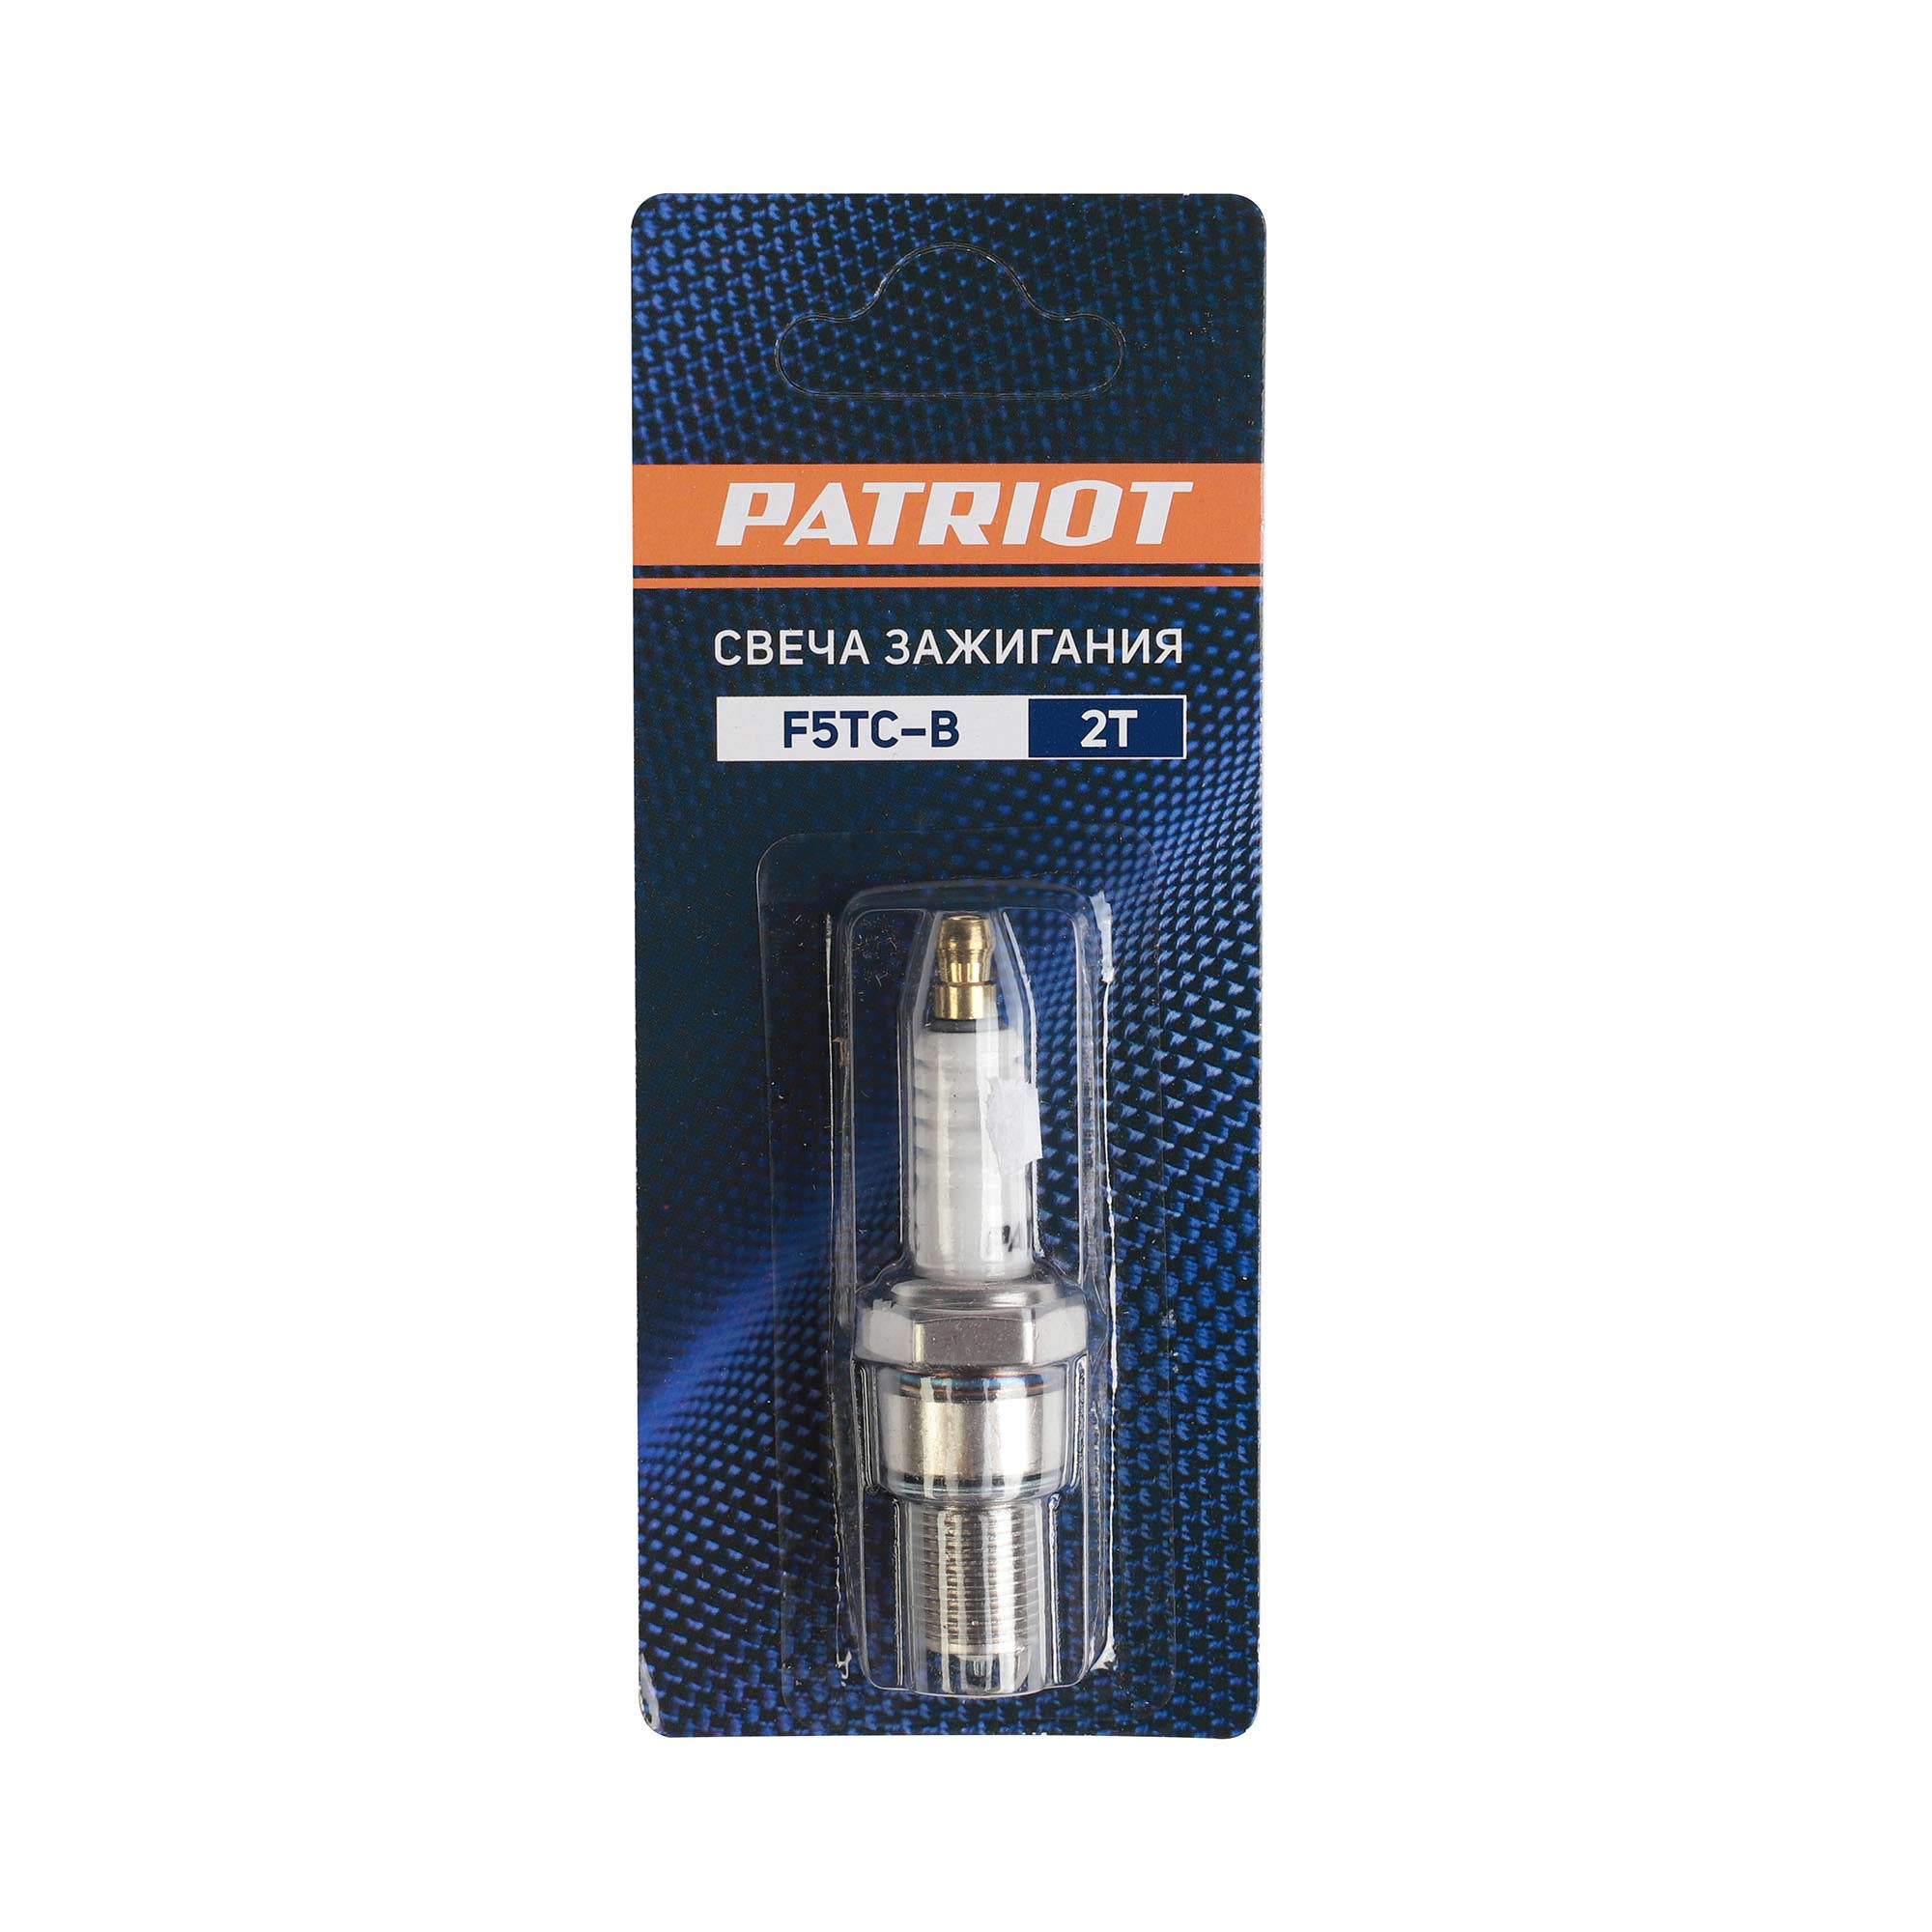 Свеча зажигания PATRIOT F5TC-B 2Т, 21 мм, резьба 19 мм, шаг М14х1.25